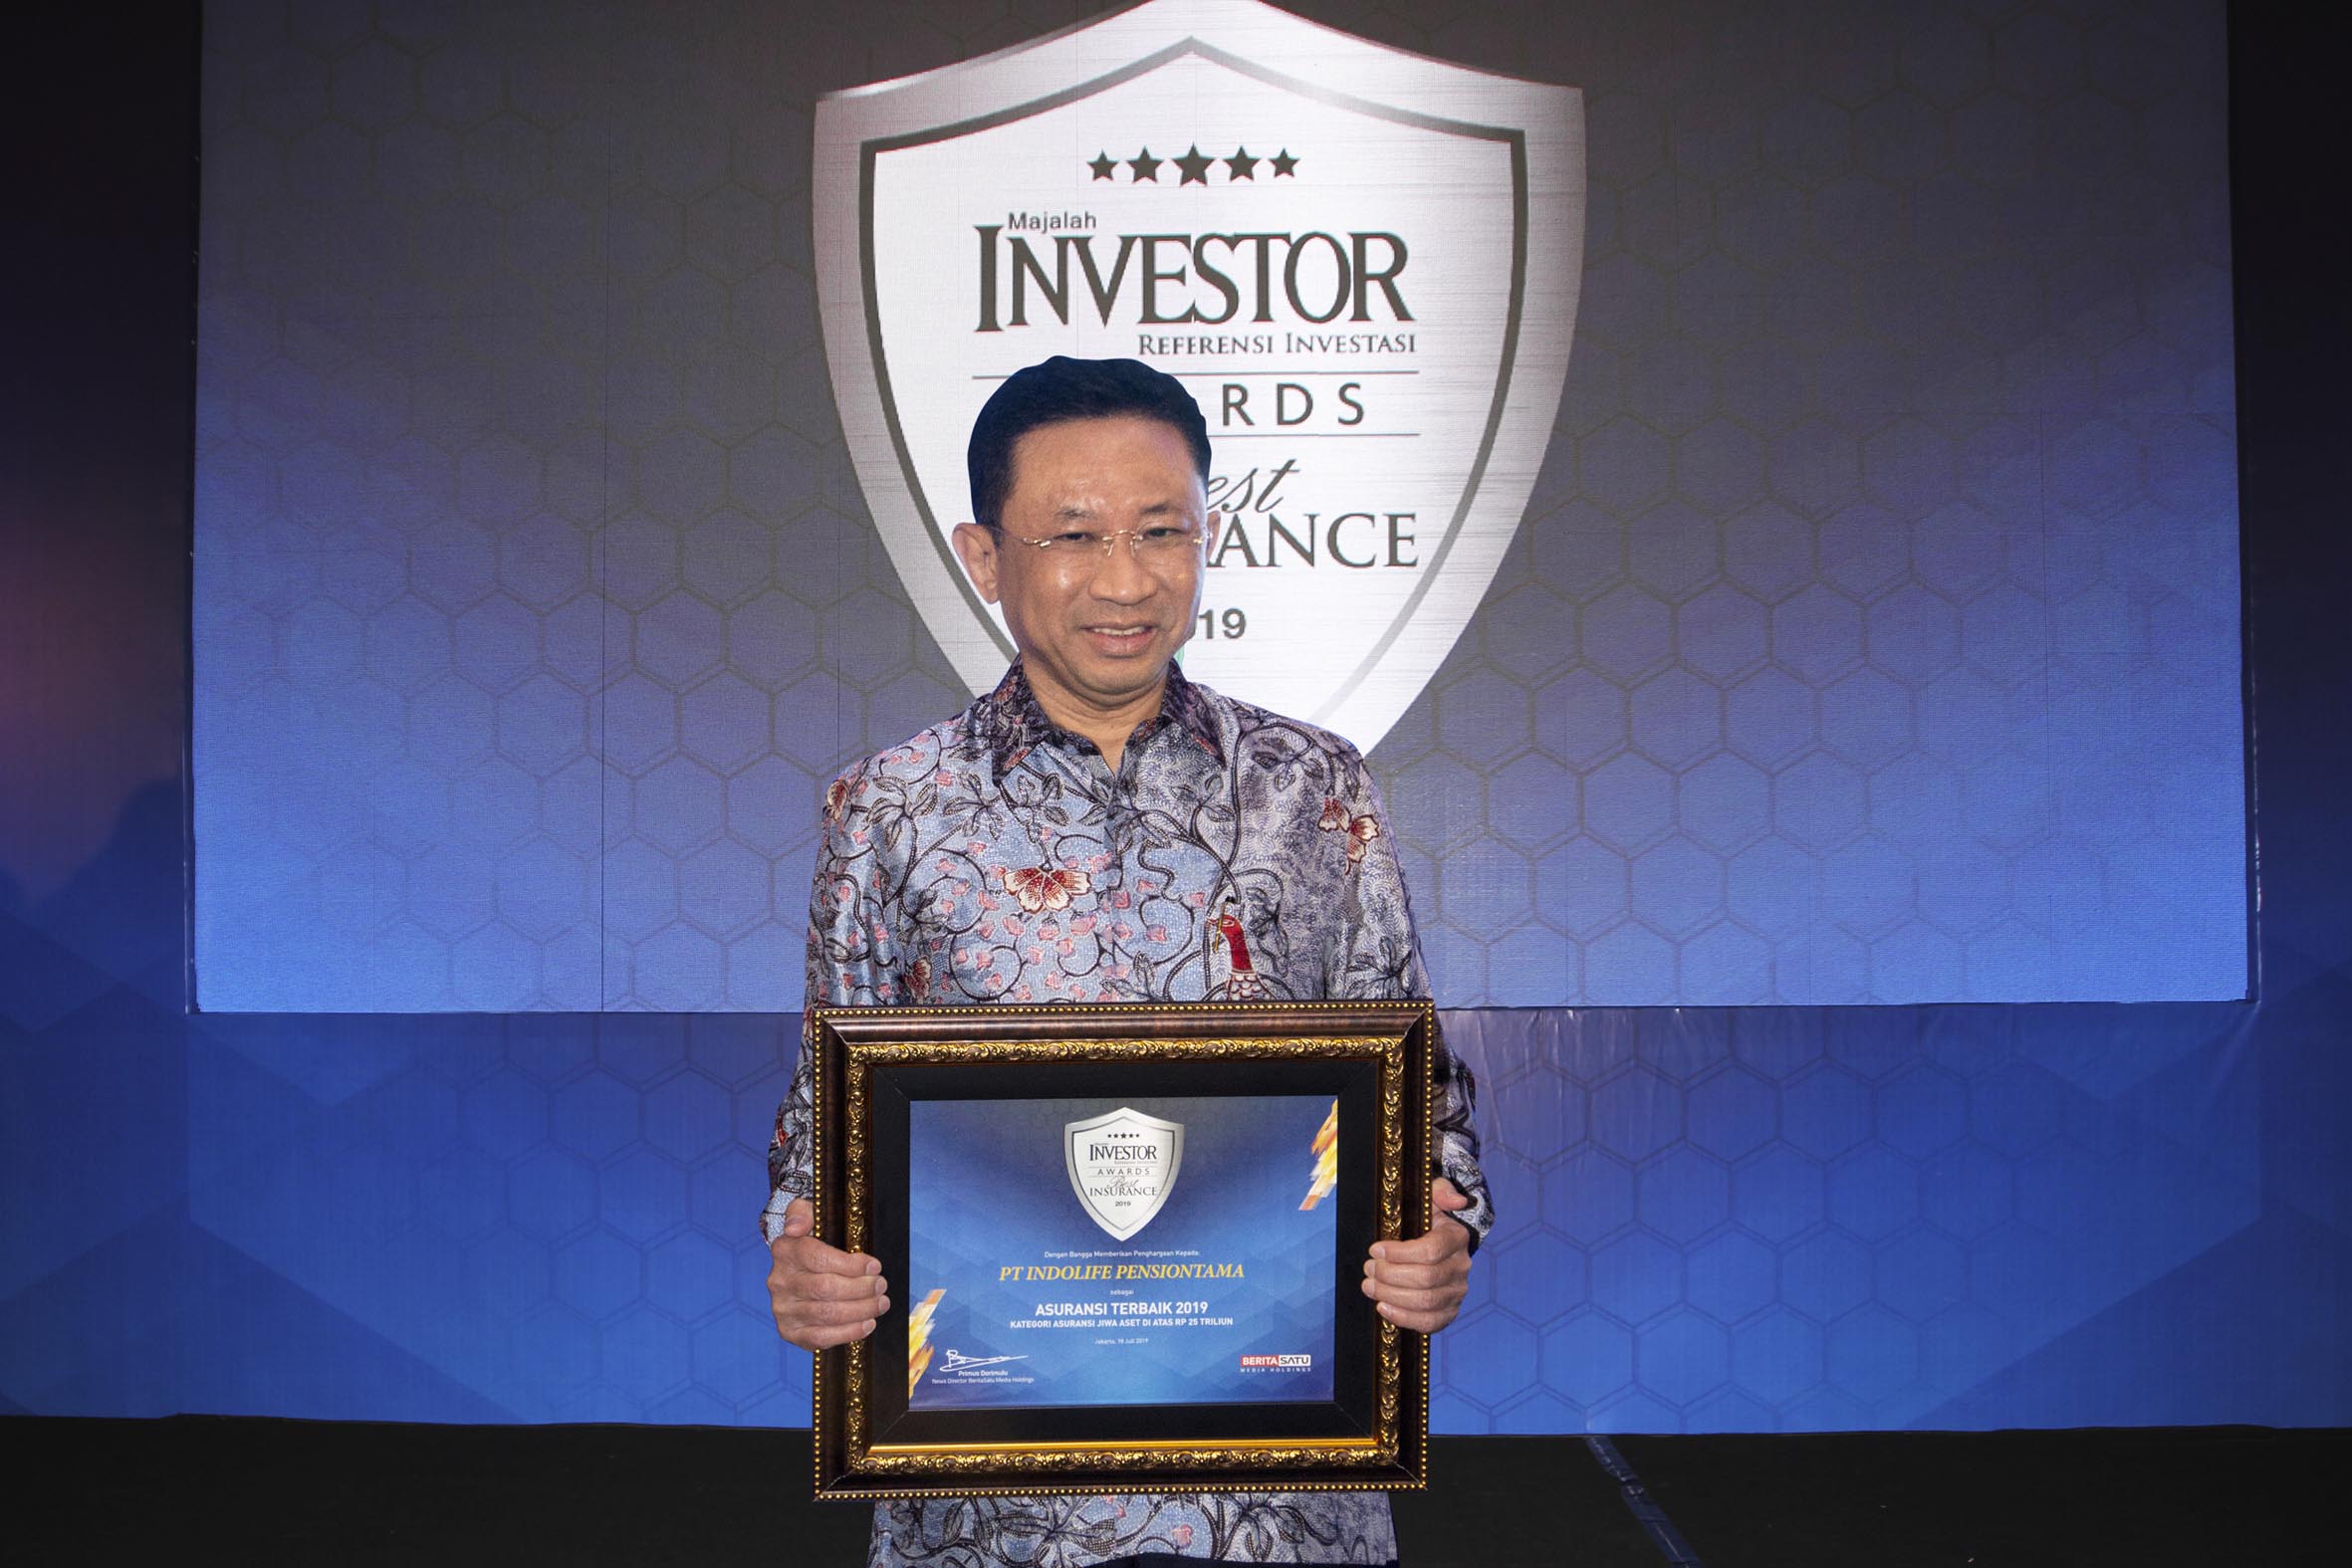 Investor Award Best Insurance 2019